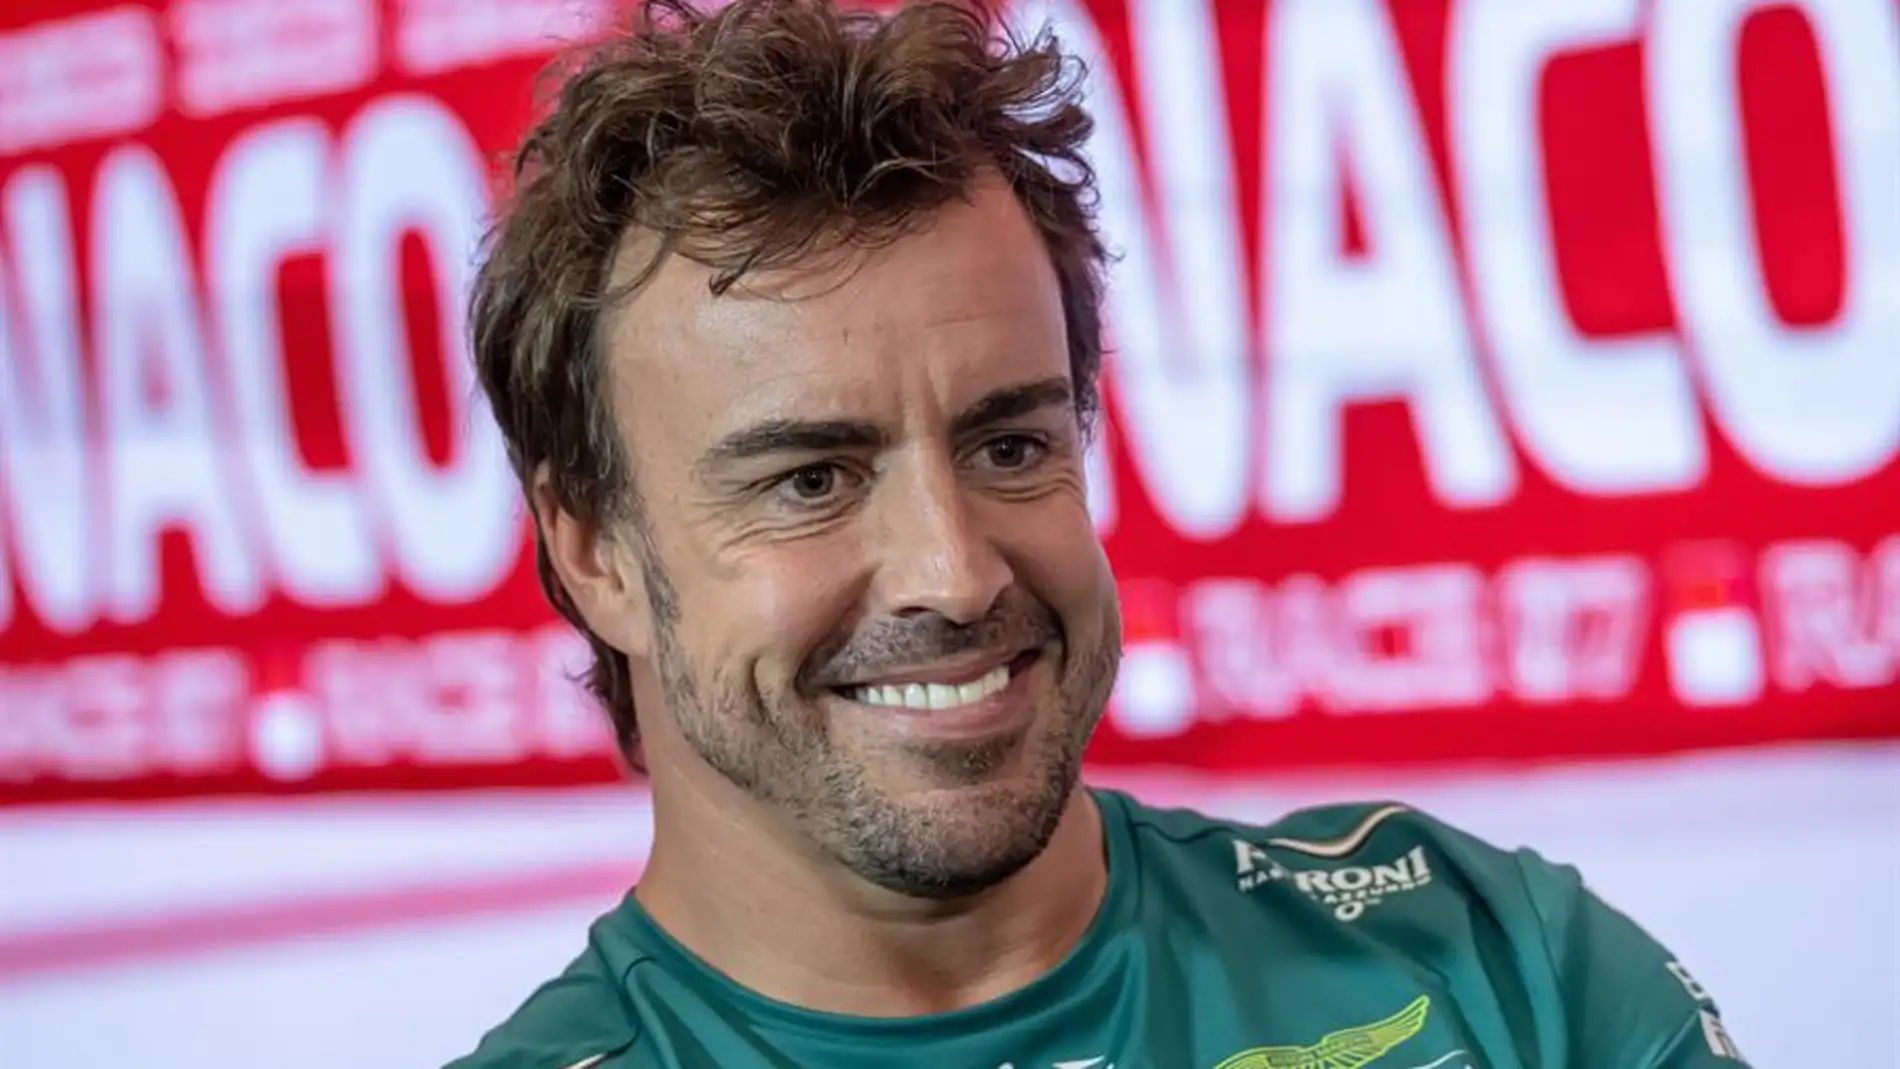 El dato que realza a Fernando Alonso frente a Hamilton y otros campeones del mundo